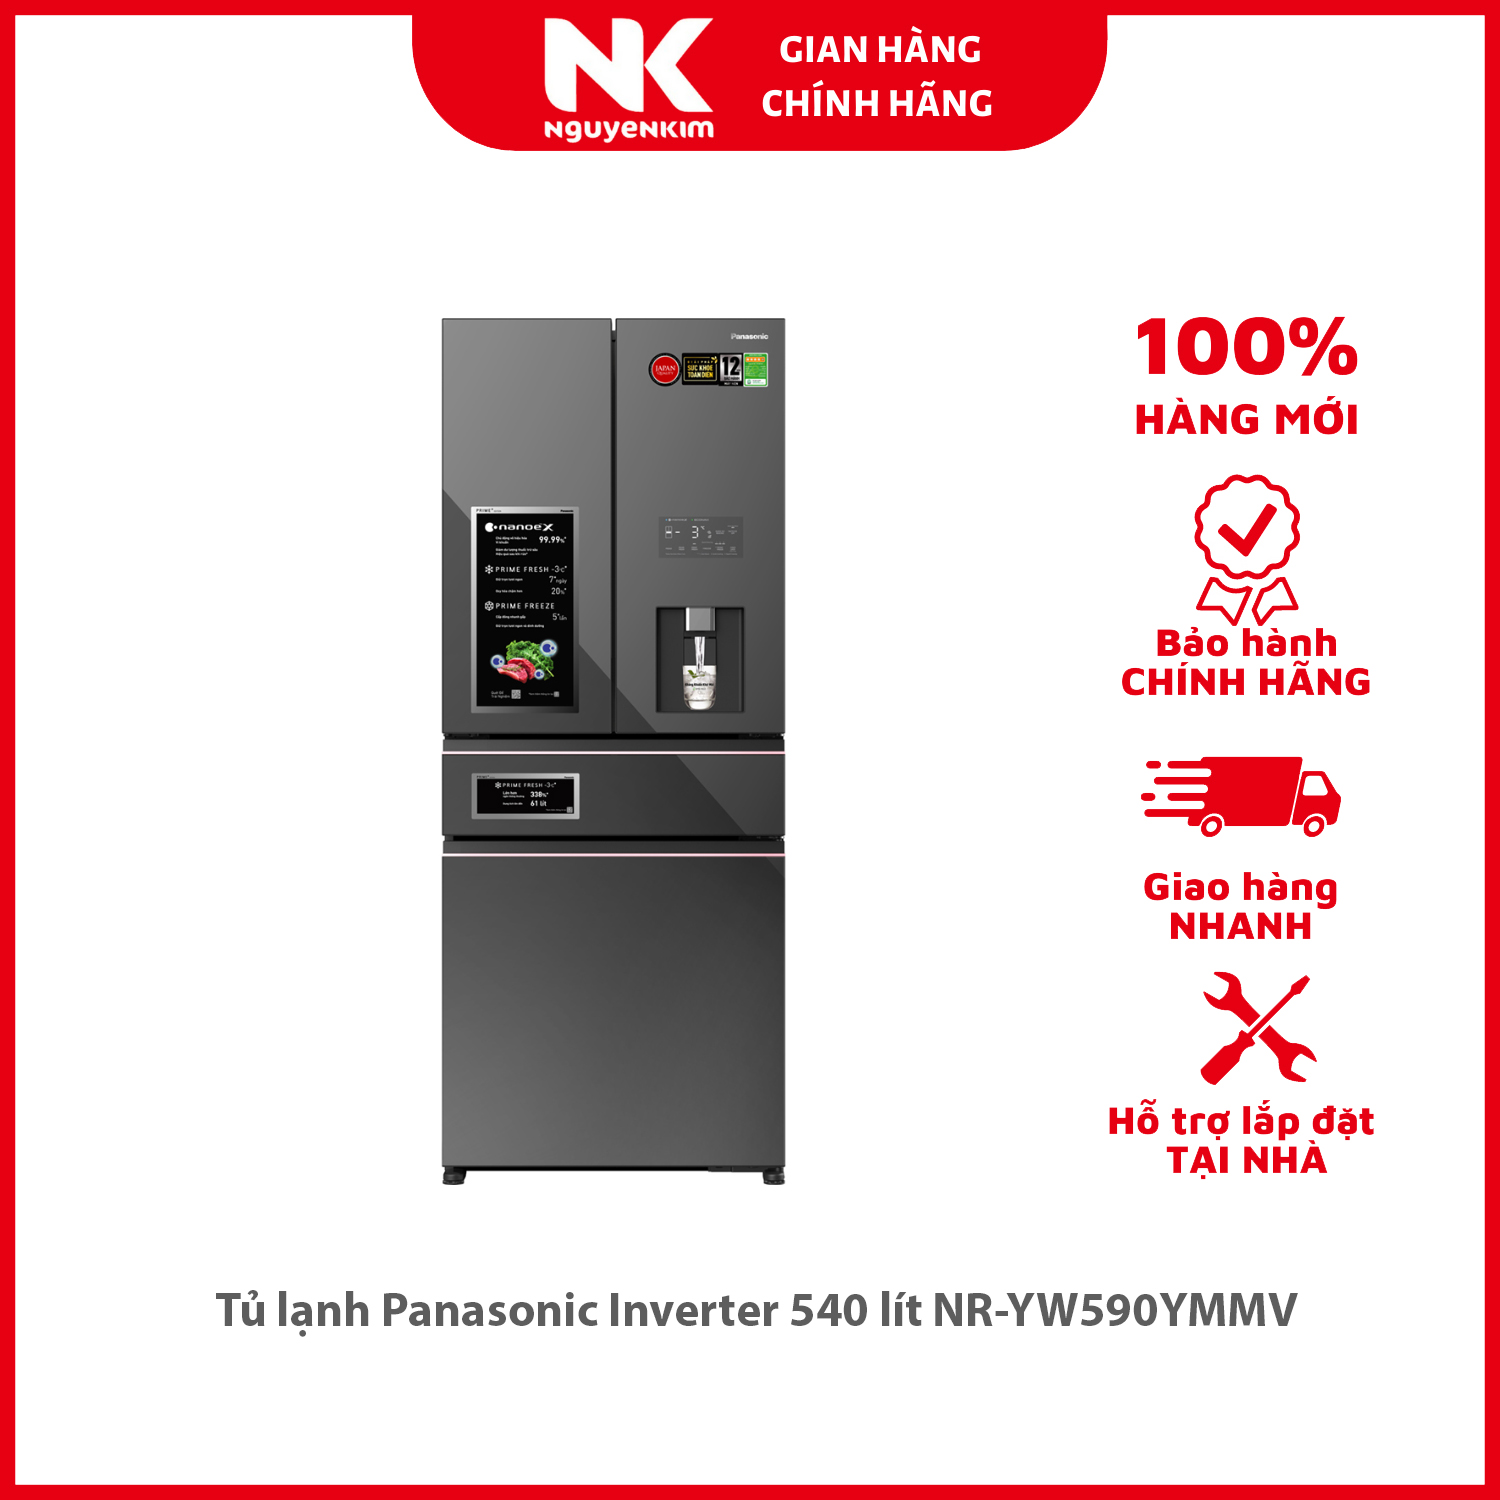 Tủ lạnh Panasonic Inverter 540 lít NR-YW590YMMV - Hàng chính hãng [Giao hàng toàn quốc]